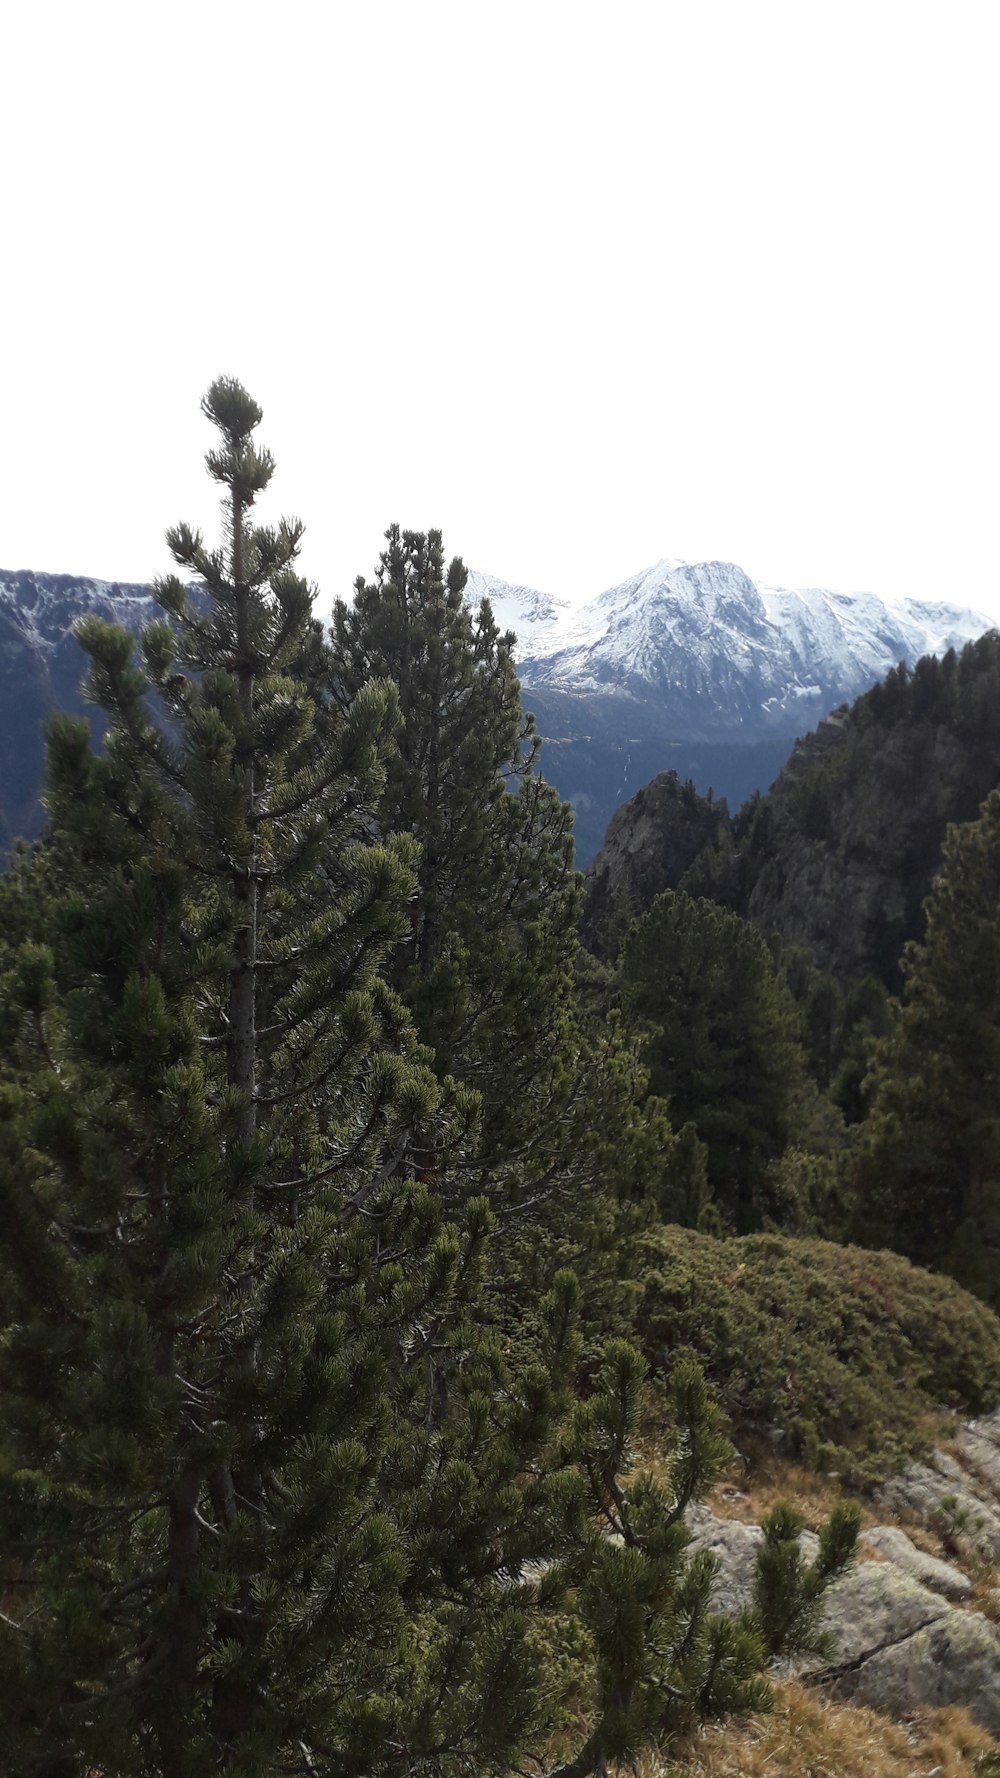 Grüne Kiefern in der Nähe von Bergen während des Tages